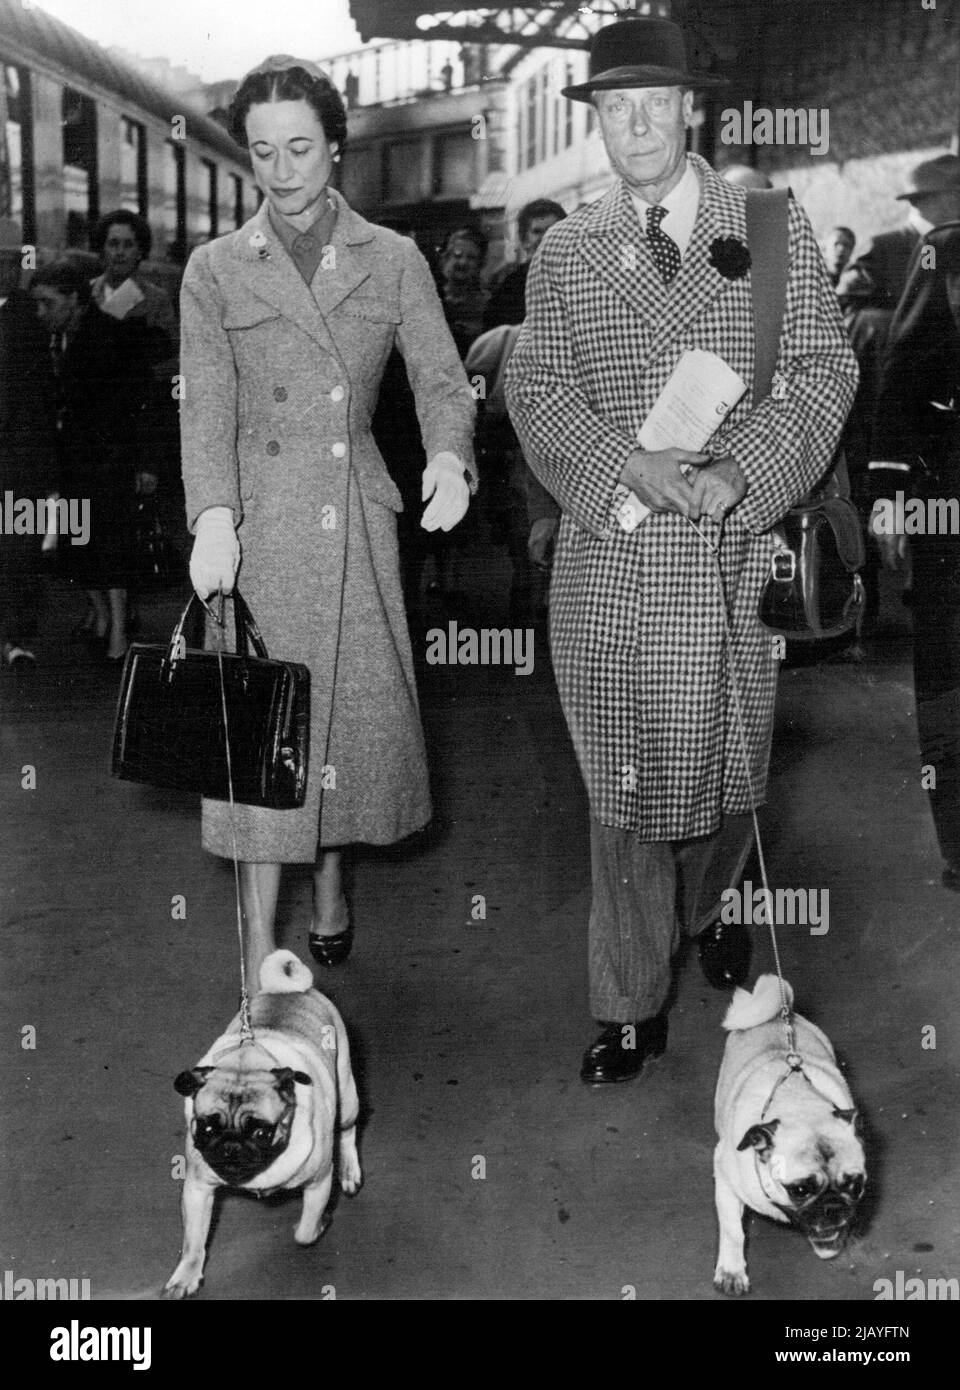 Duc et duchesse de Windsor Retour en France: Le duc et la duchesse de Windsor à la gare hier avec leurs deux chiens d'animaux. Le duc et la duchesse de Windsor sont arrivés hier à Paris d'Amérique. Ils doivent passer le reste de l'année en France. 27 avril 1954. (Photo de Paul Popper, Paul Popper Ltd.). Banque D'Images